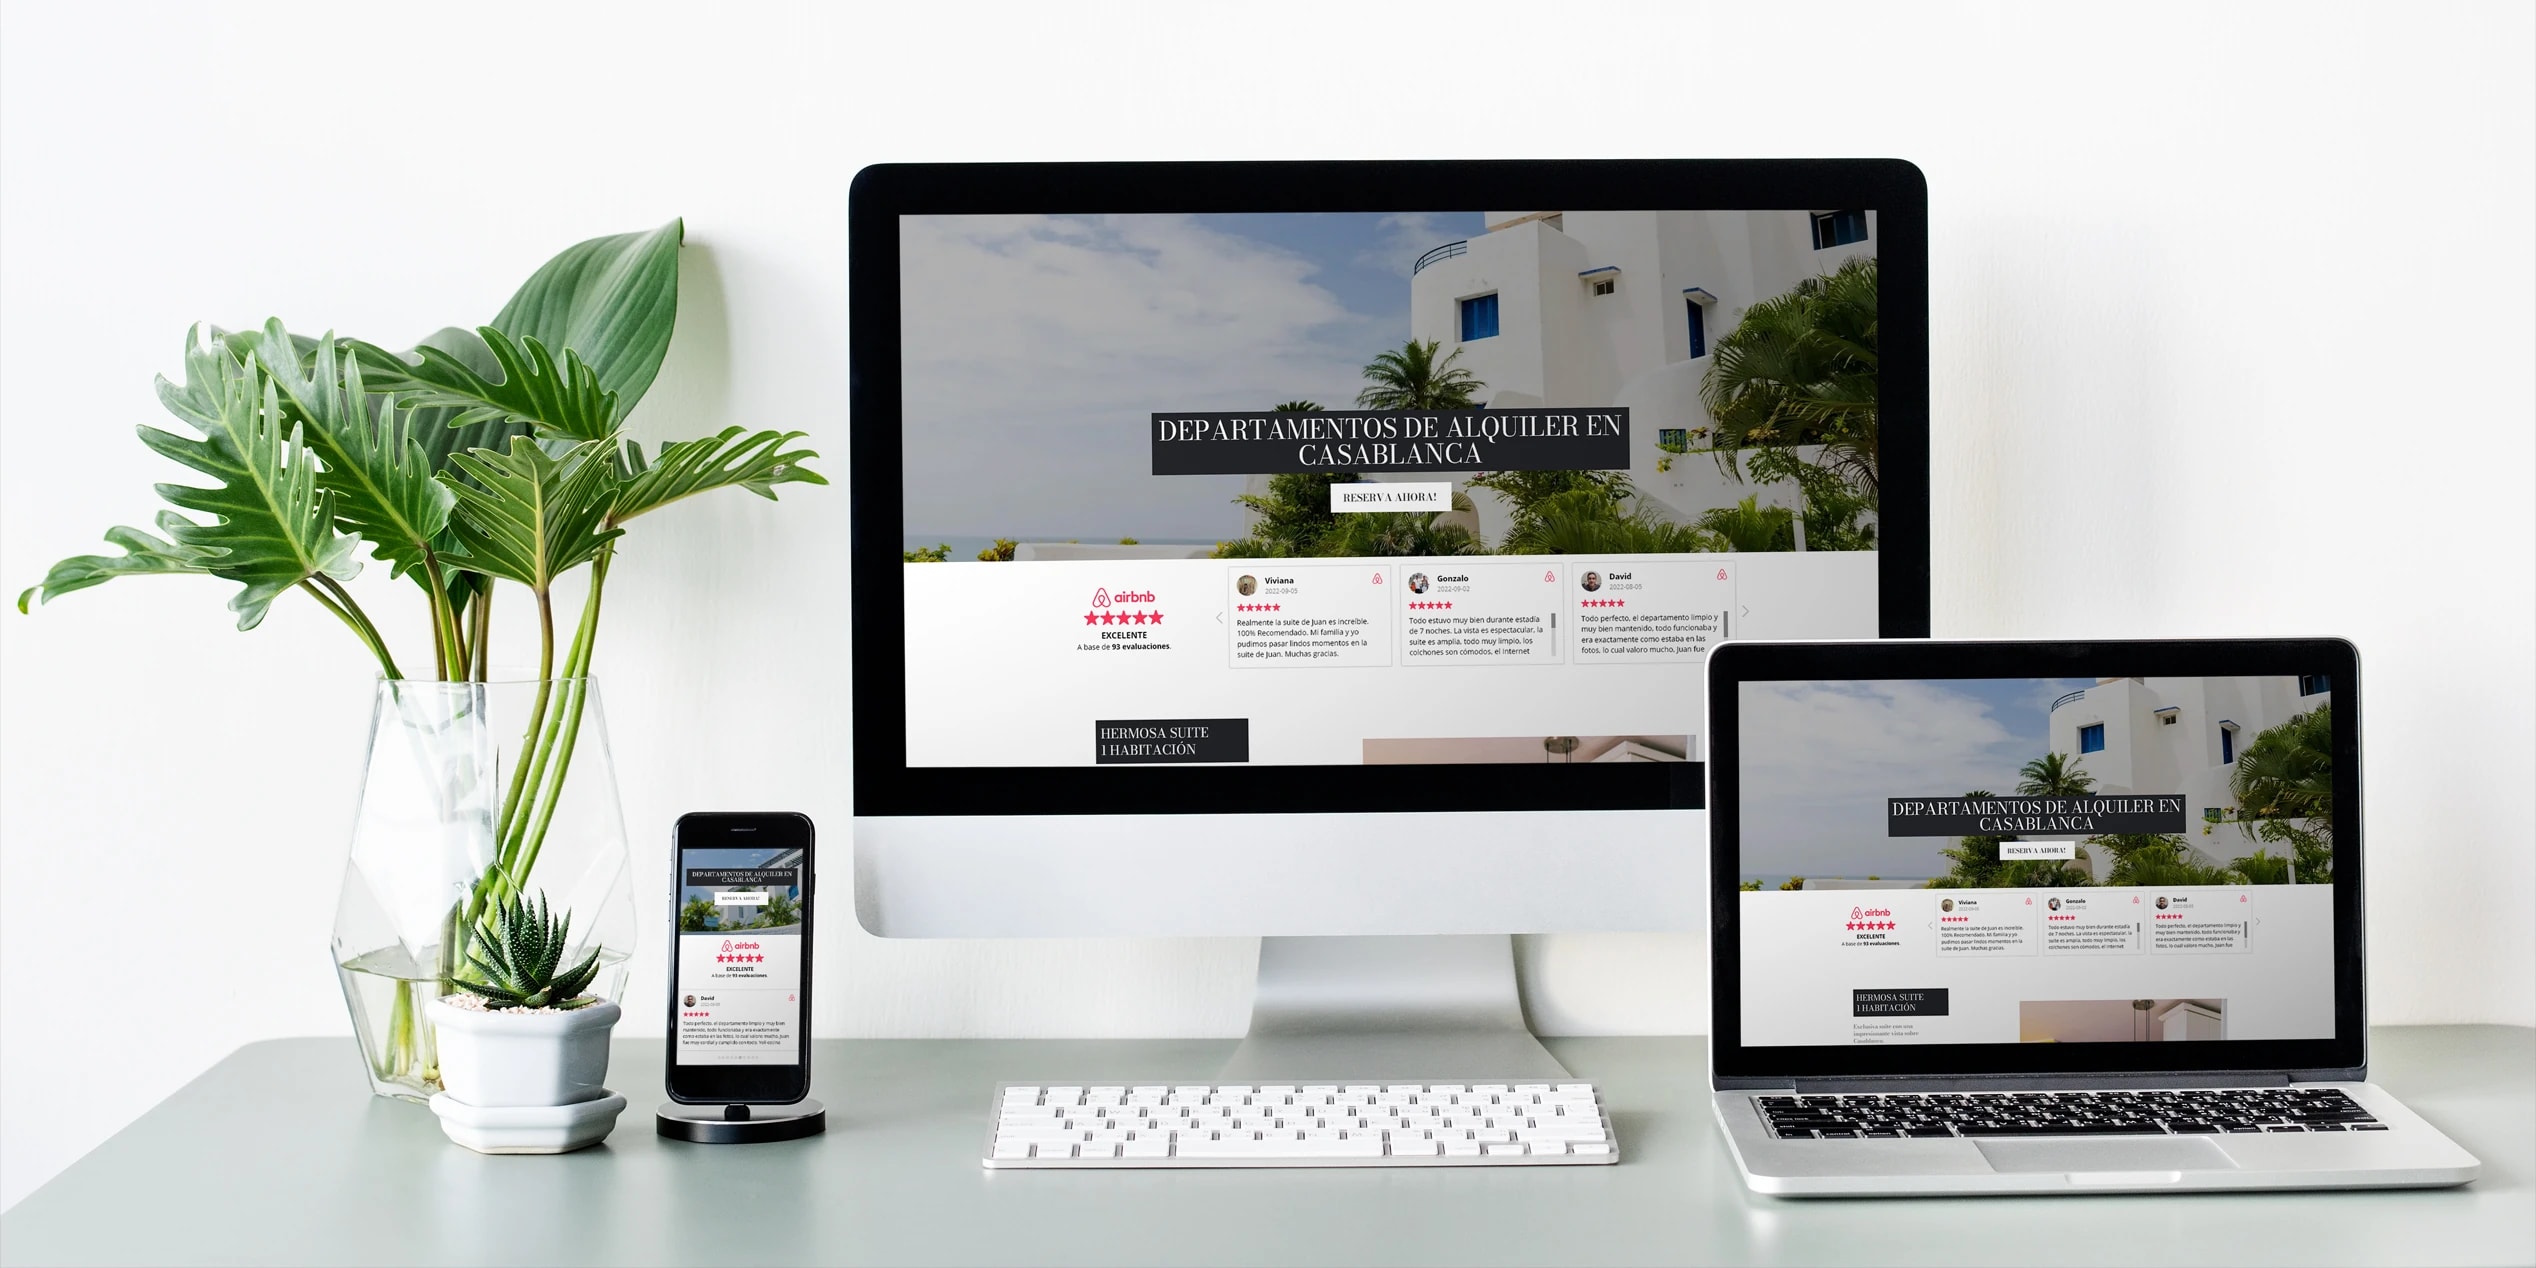 Airbnb intergrated WordPress Website Design by Mayantha Jayasinghe